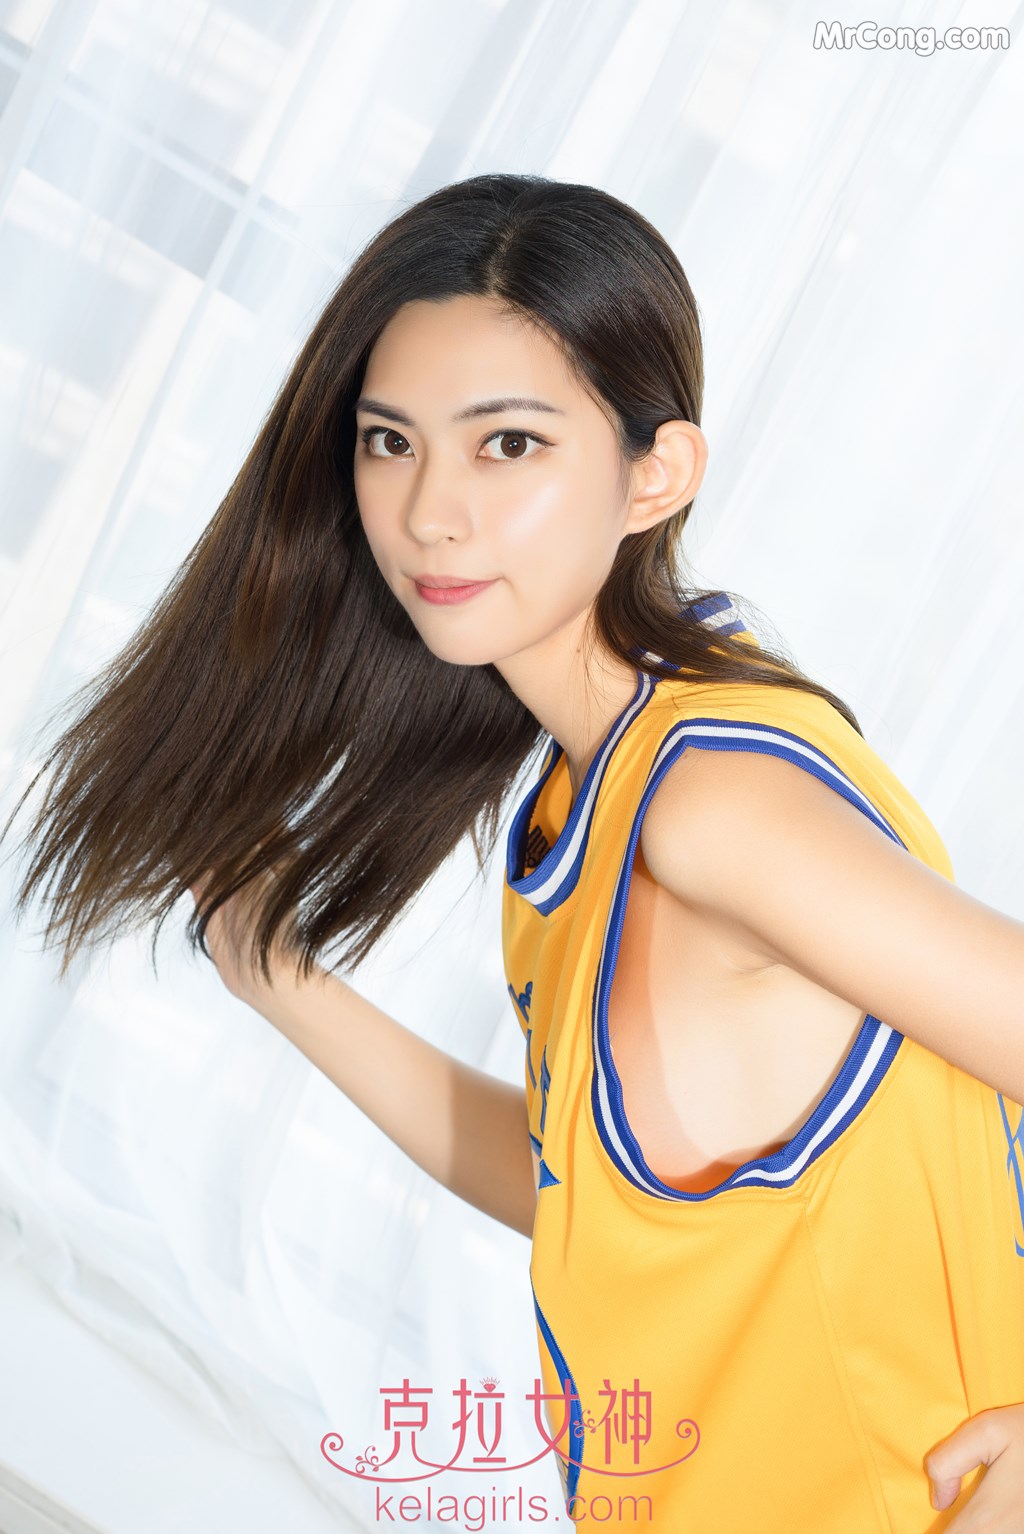 KelaGirls 2017-07-31: Model Ke Jin (柯瑾) (25 photos) photo 1-11